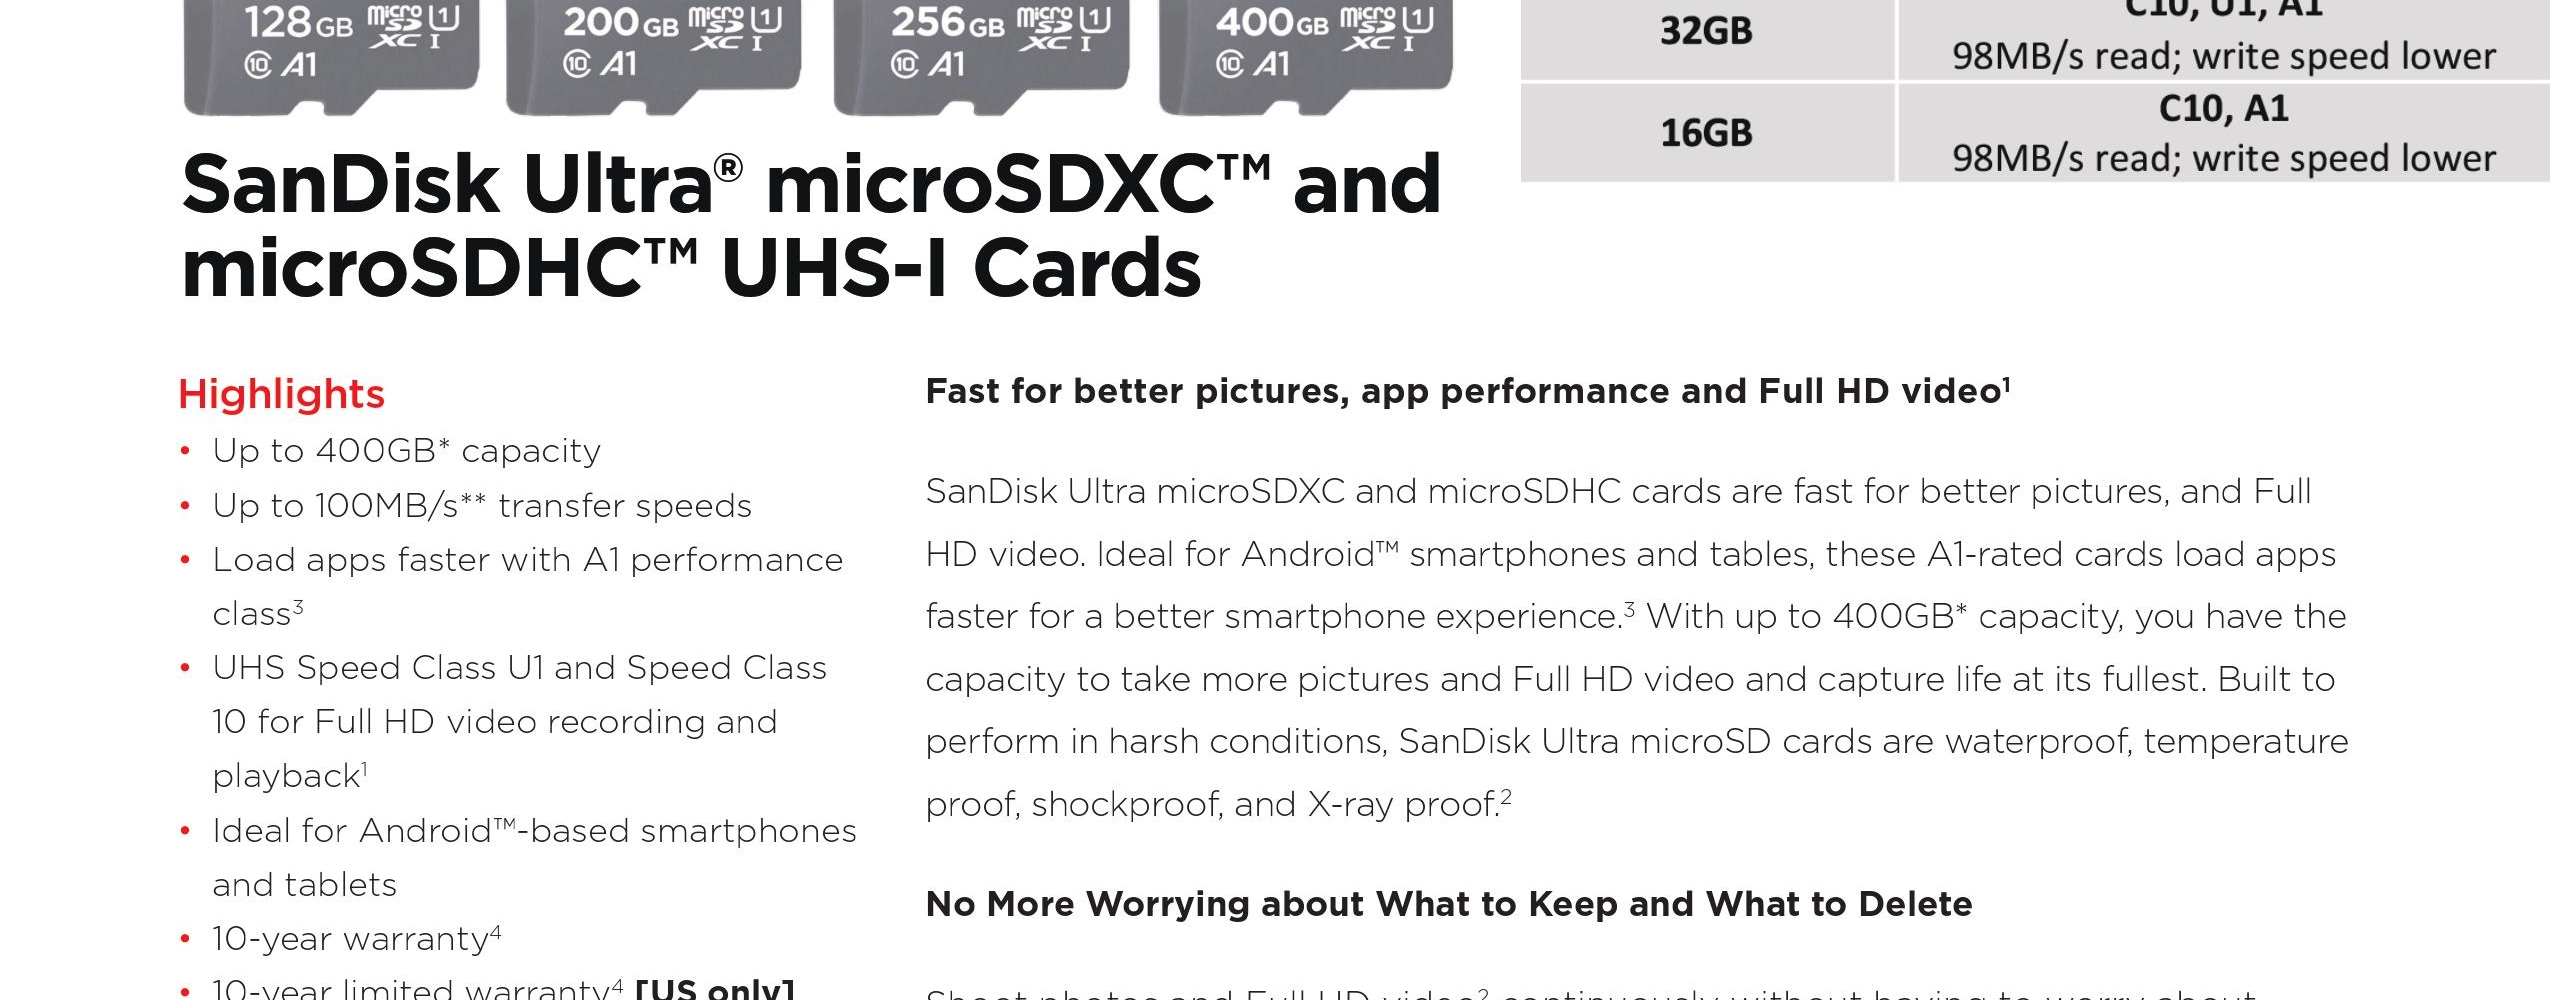 ภาพประกอบคำอธิบาย Ultra microSD ความเร็ว 80MB/s ความจุ 32GB